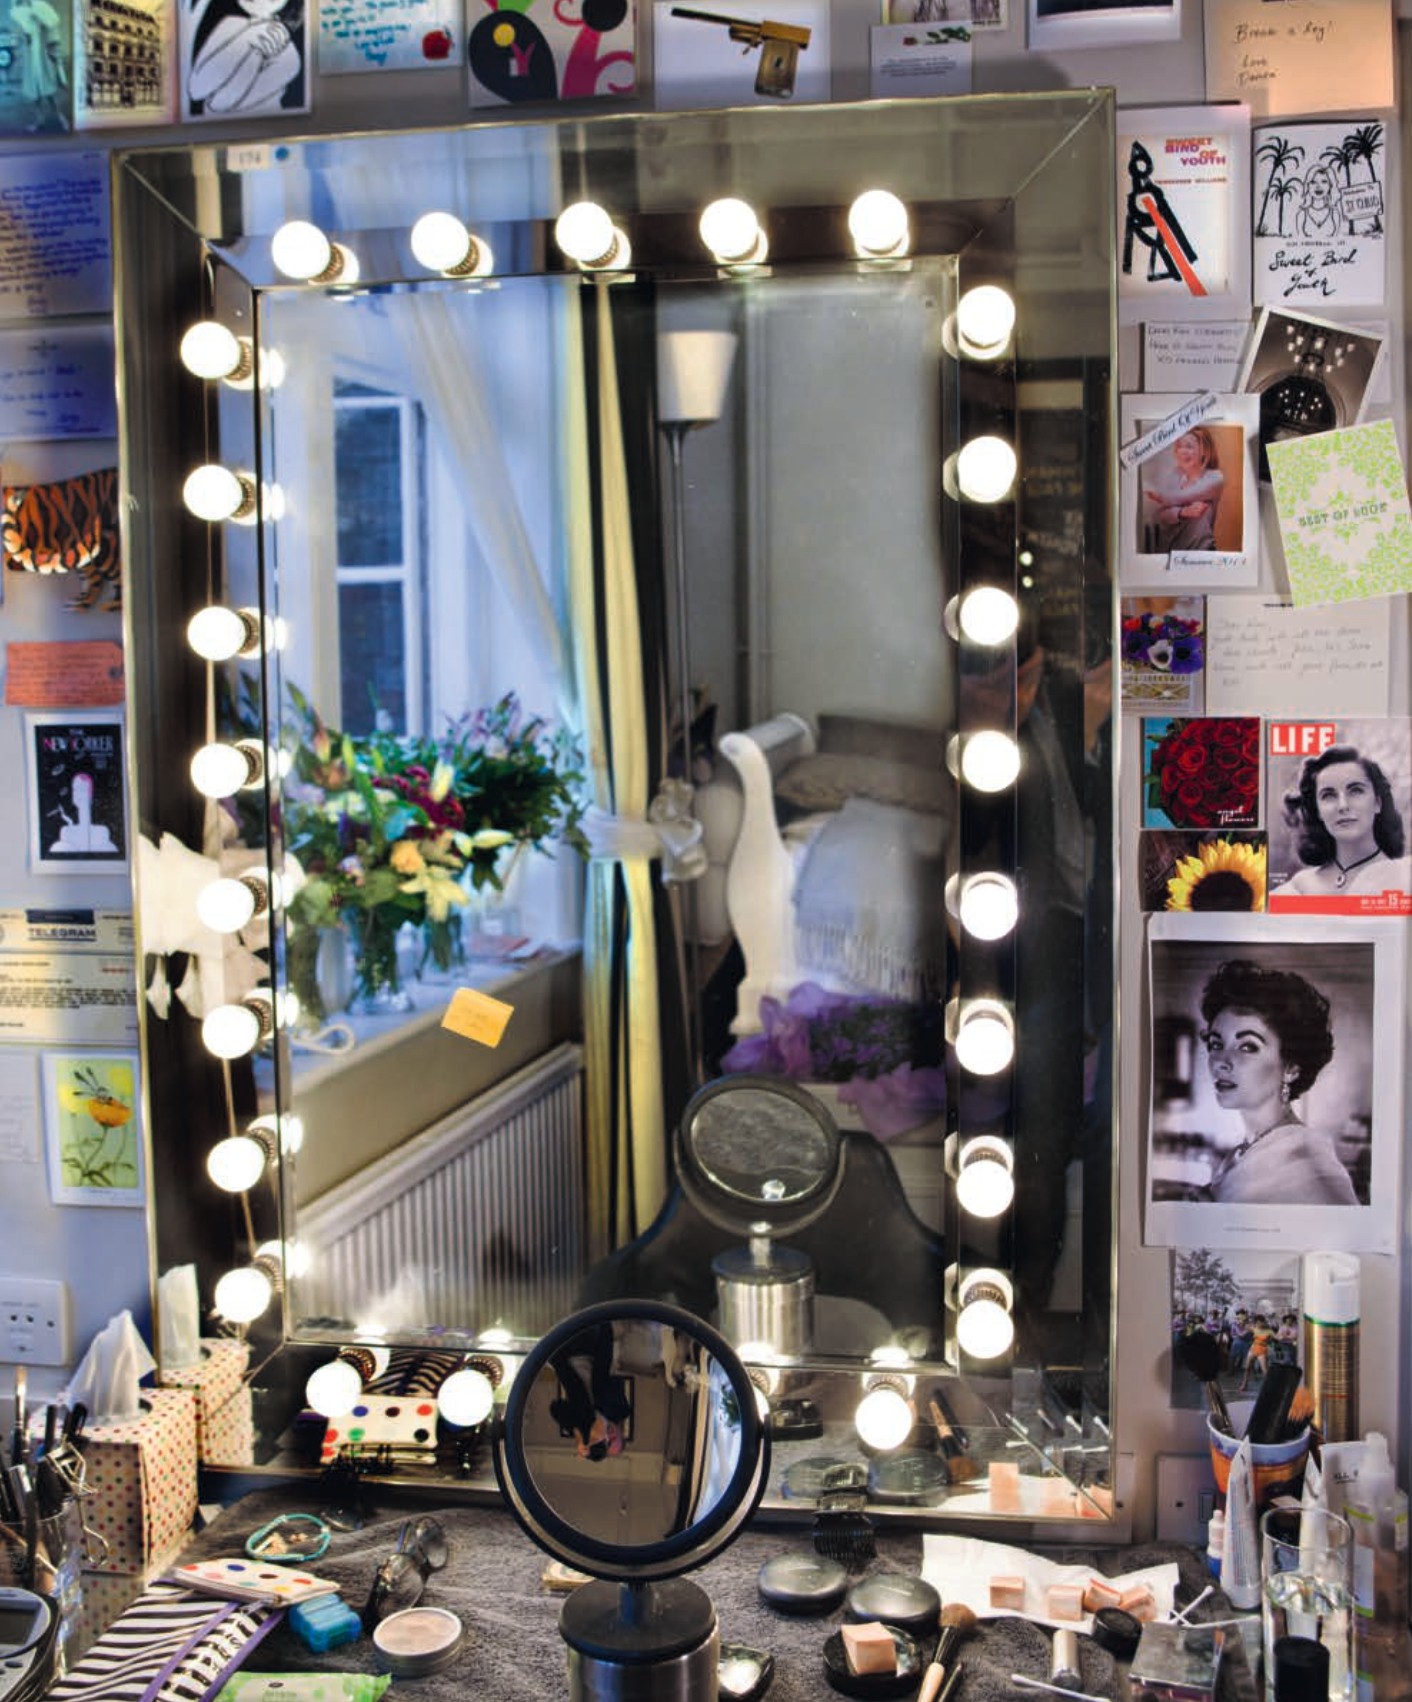 Туалетный столик Ким Кэттролл в театре Олд Вик, 2013 год. Многие ведущие актеры разных поколений смотрелись в это зеркало. Фотограф Саймон Аннанд

